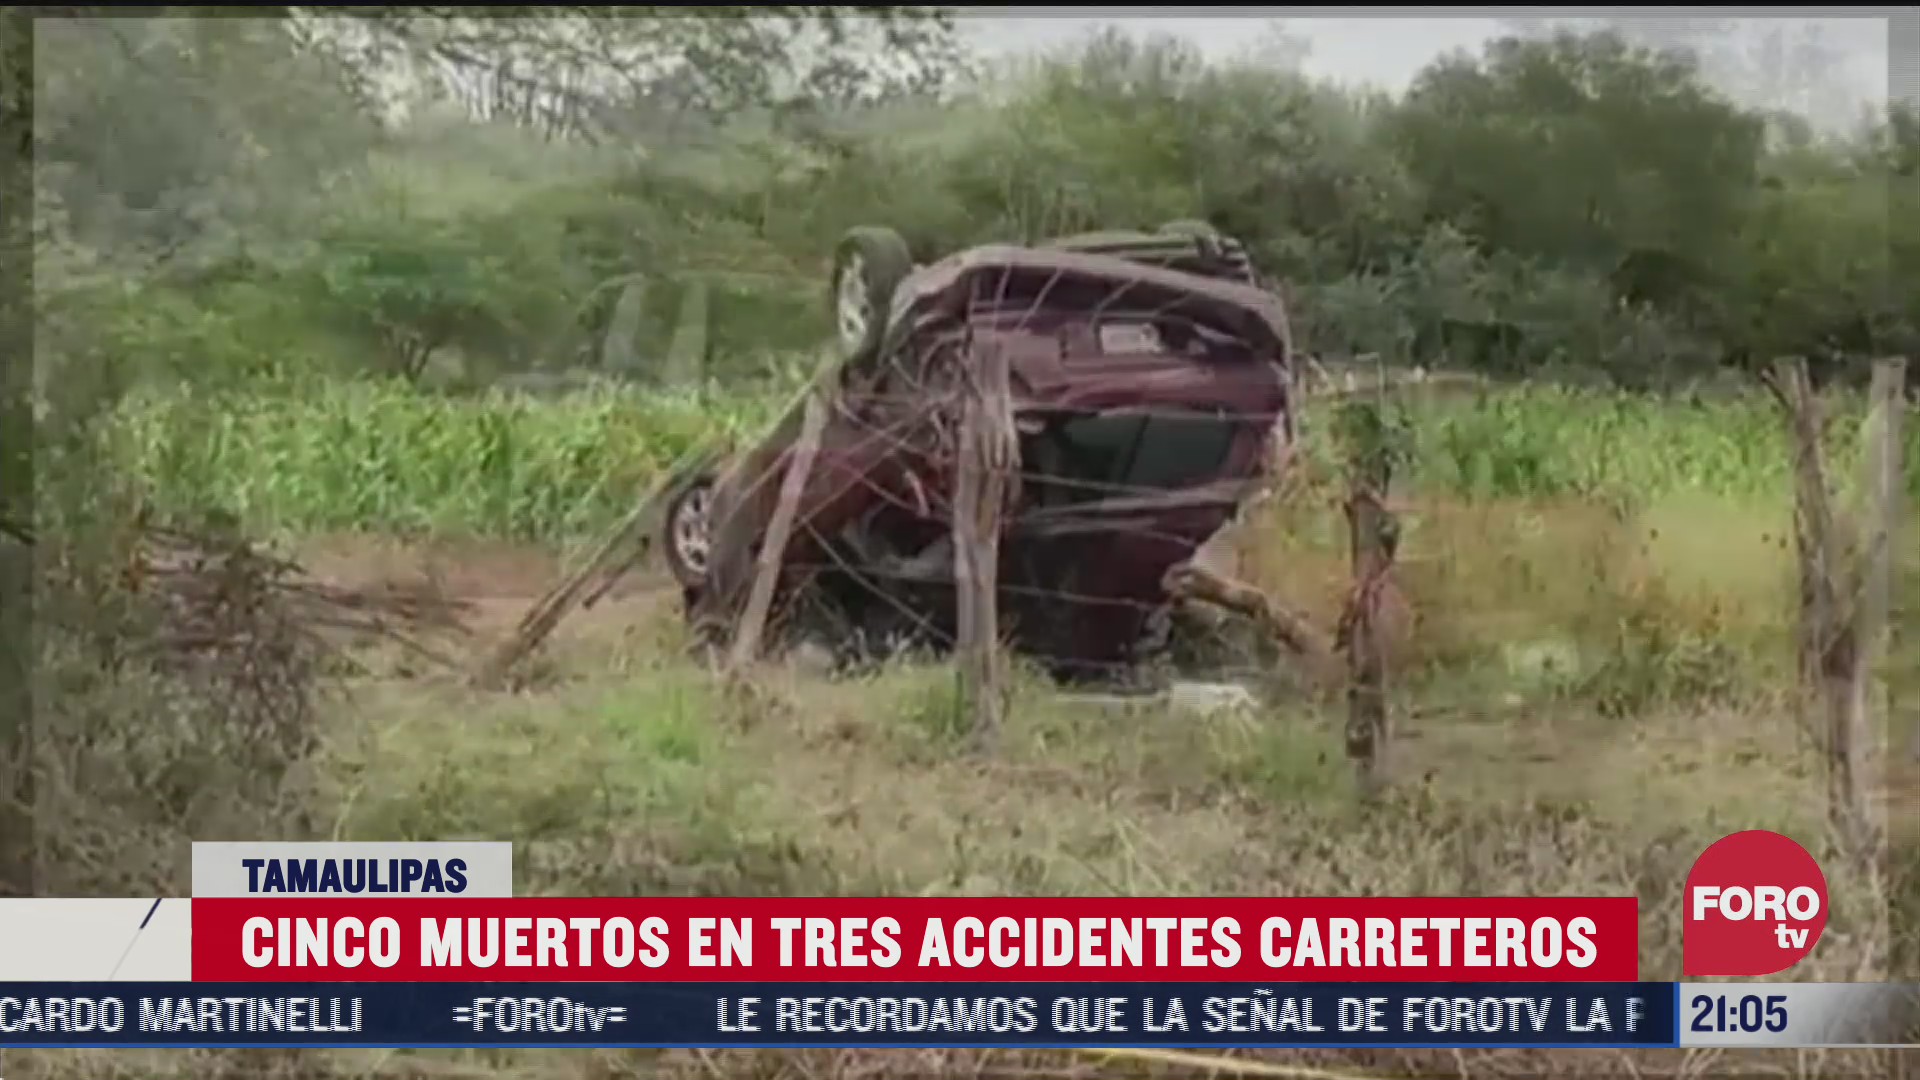 accidentes carreteros en tamaulipas cobran la vida de cinco personas